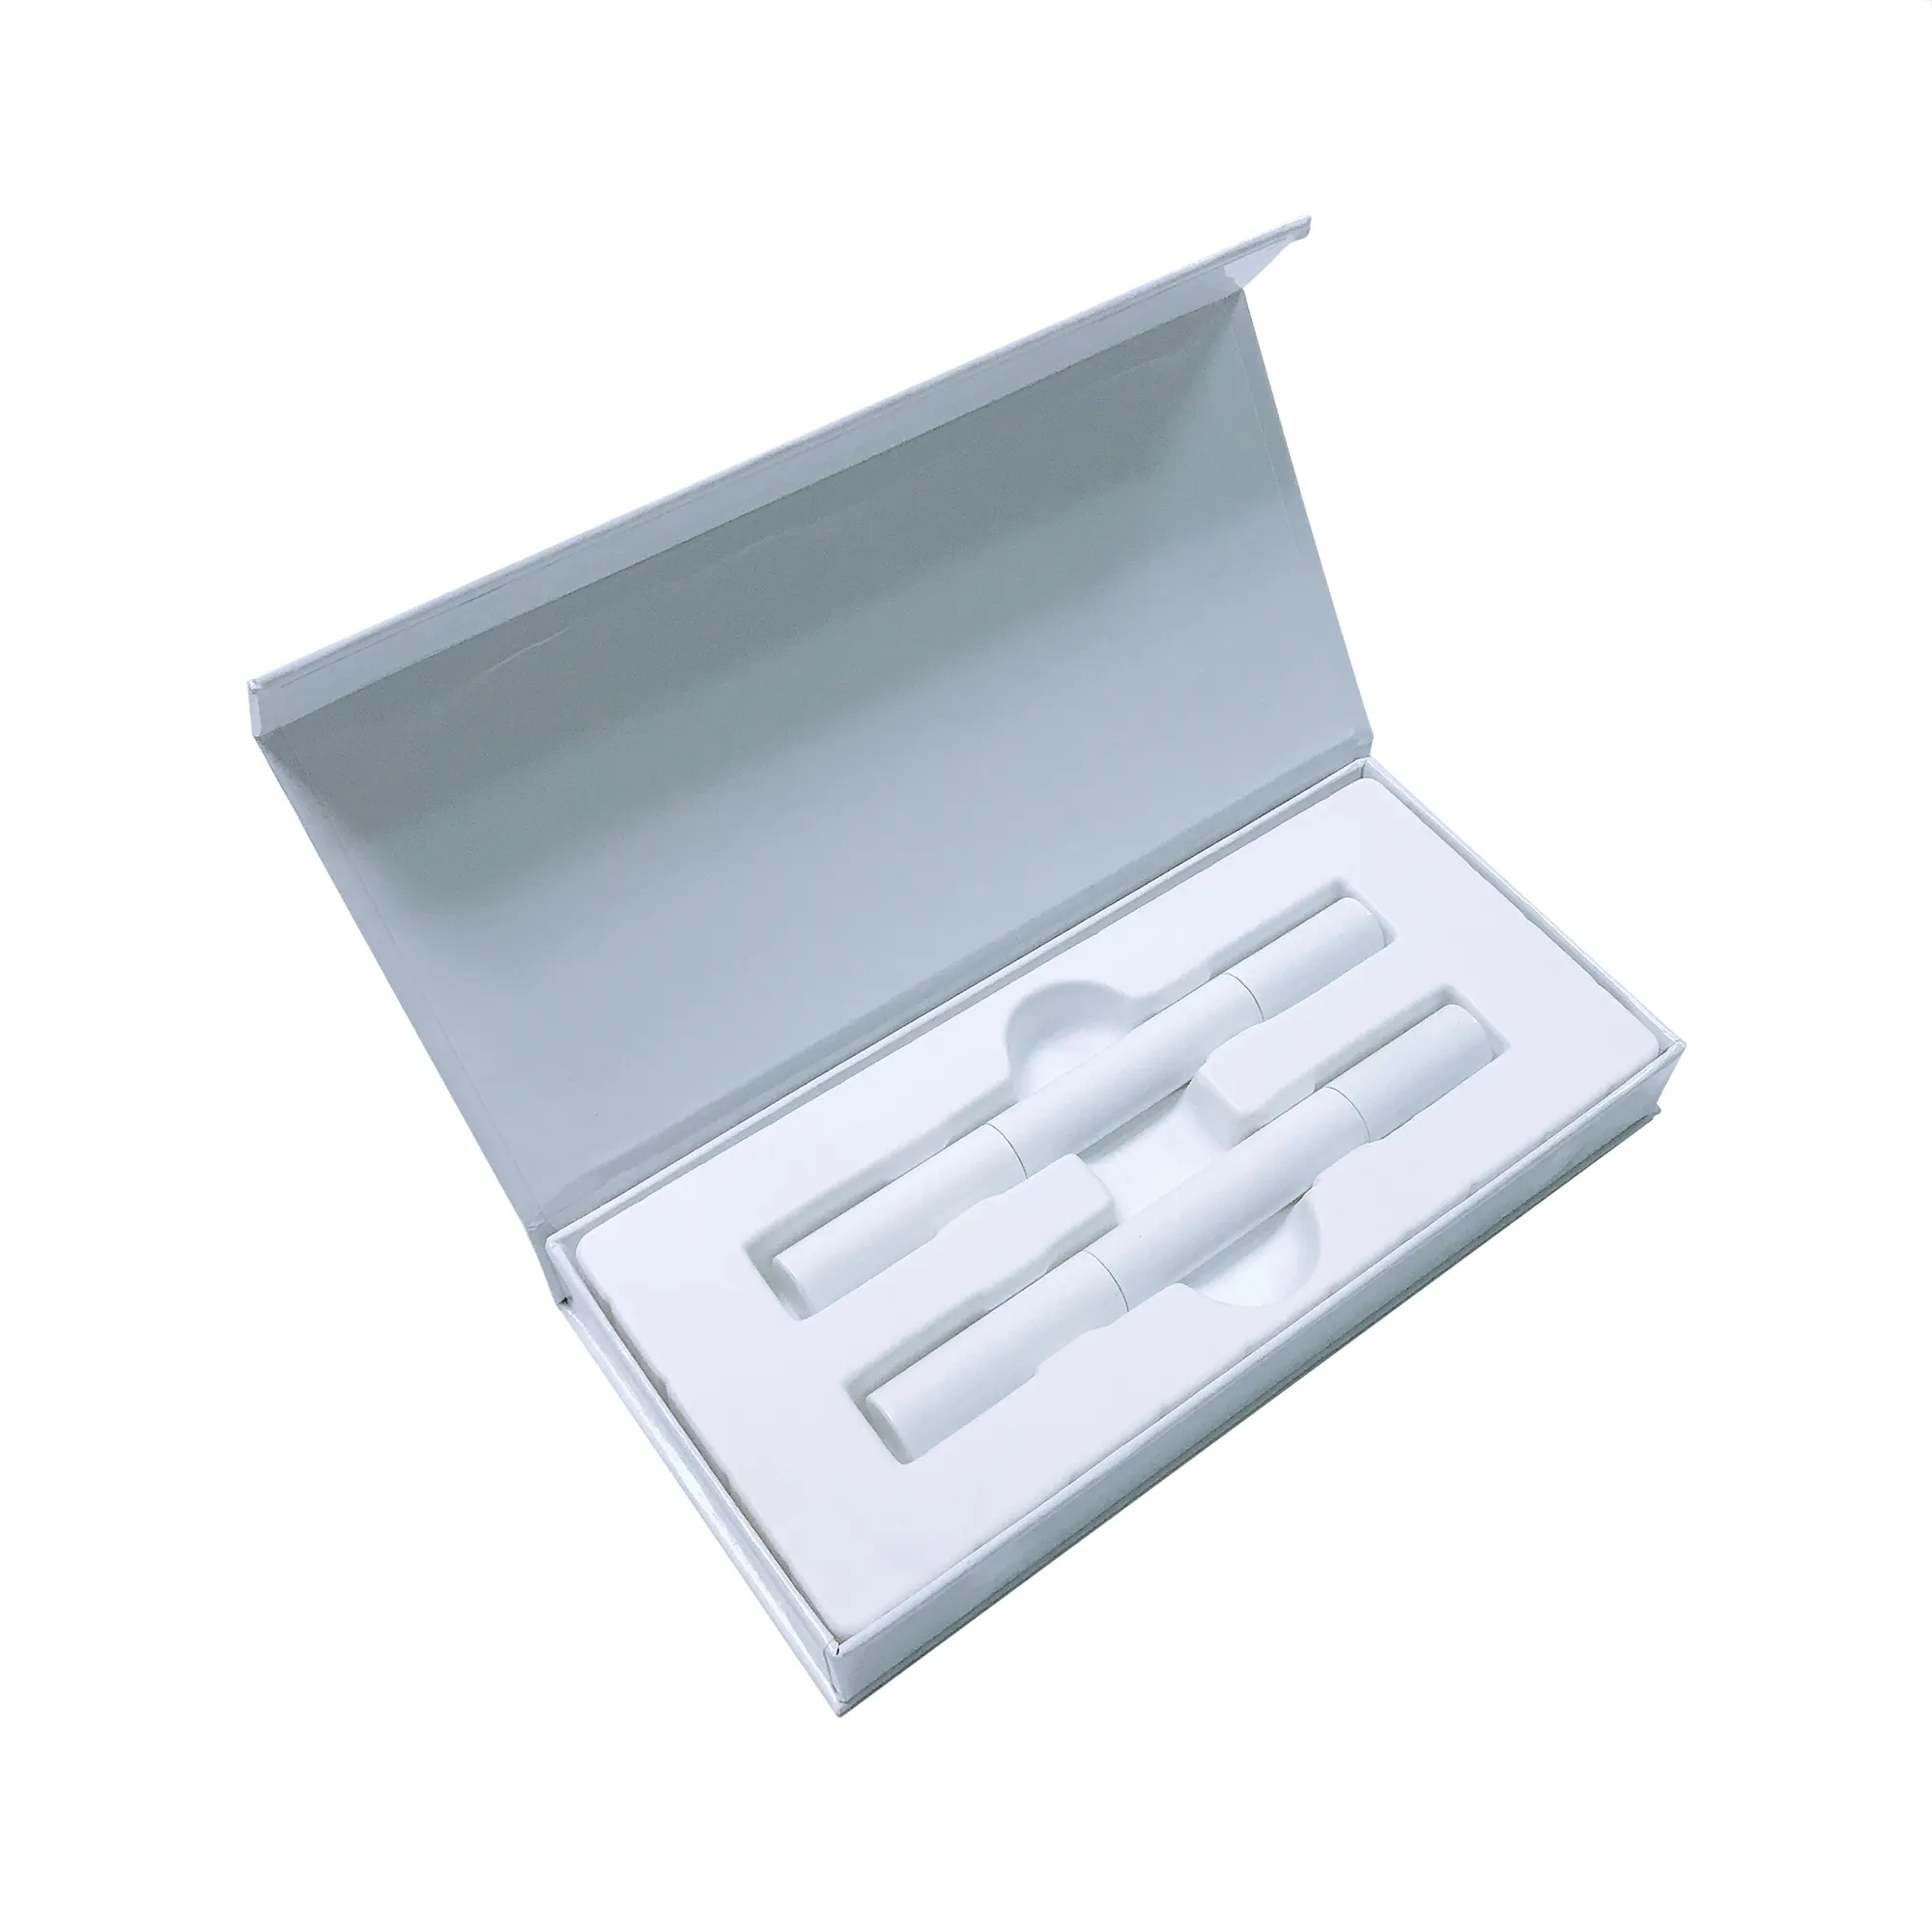 歯のホワイトニングペン歯のブリーチングペンボックス付きプライベートラベル歯のホワイトニングジェルペン